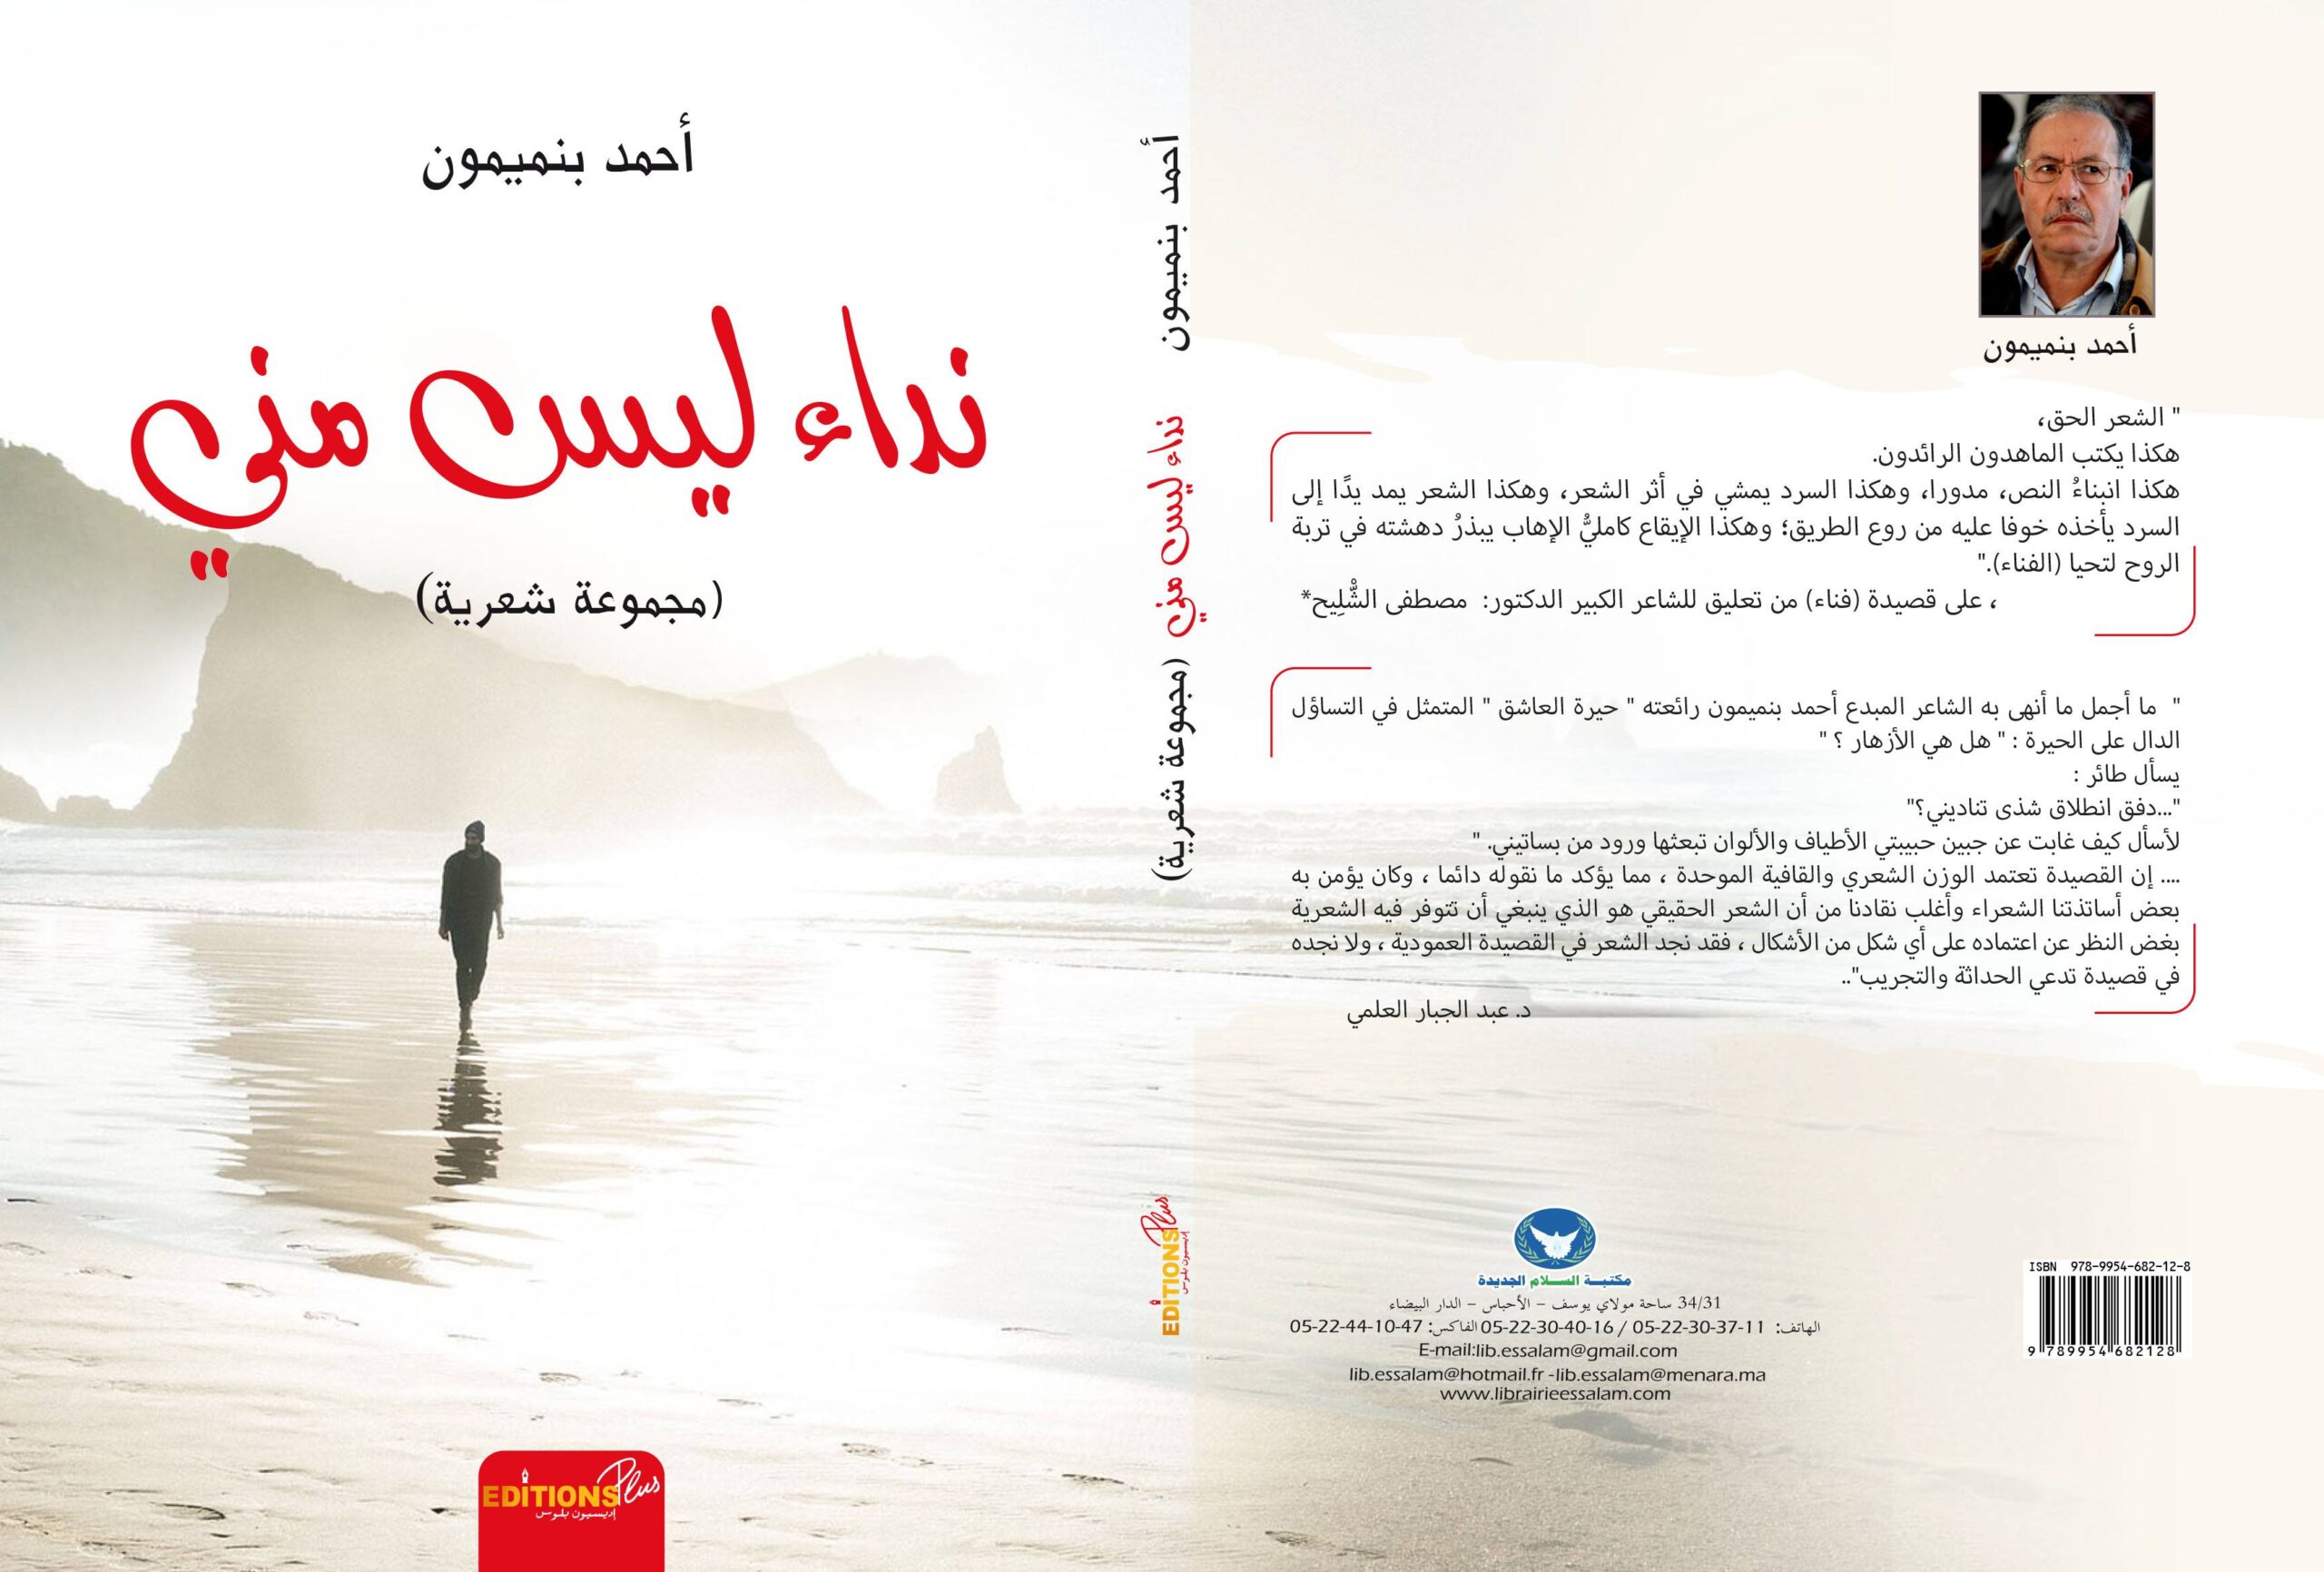 (نداء ليس مني ) : إصدار جديد للشاعر أحمد بنميمون